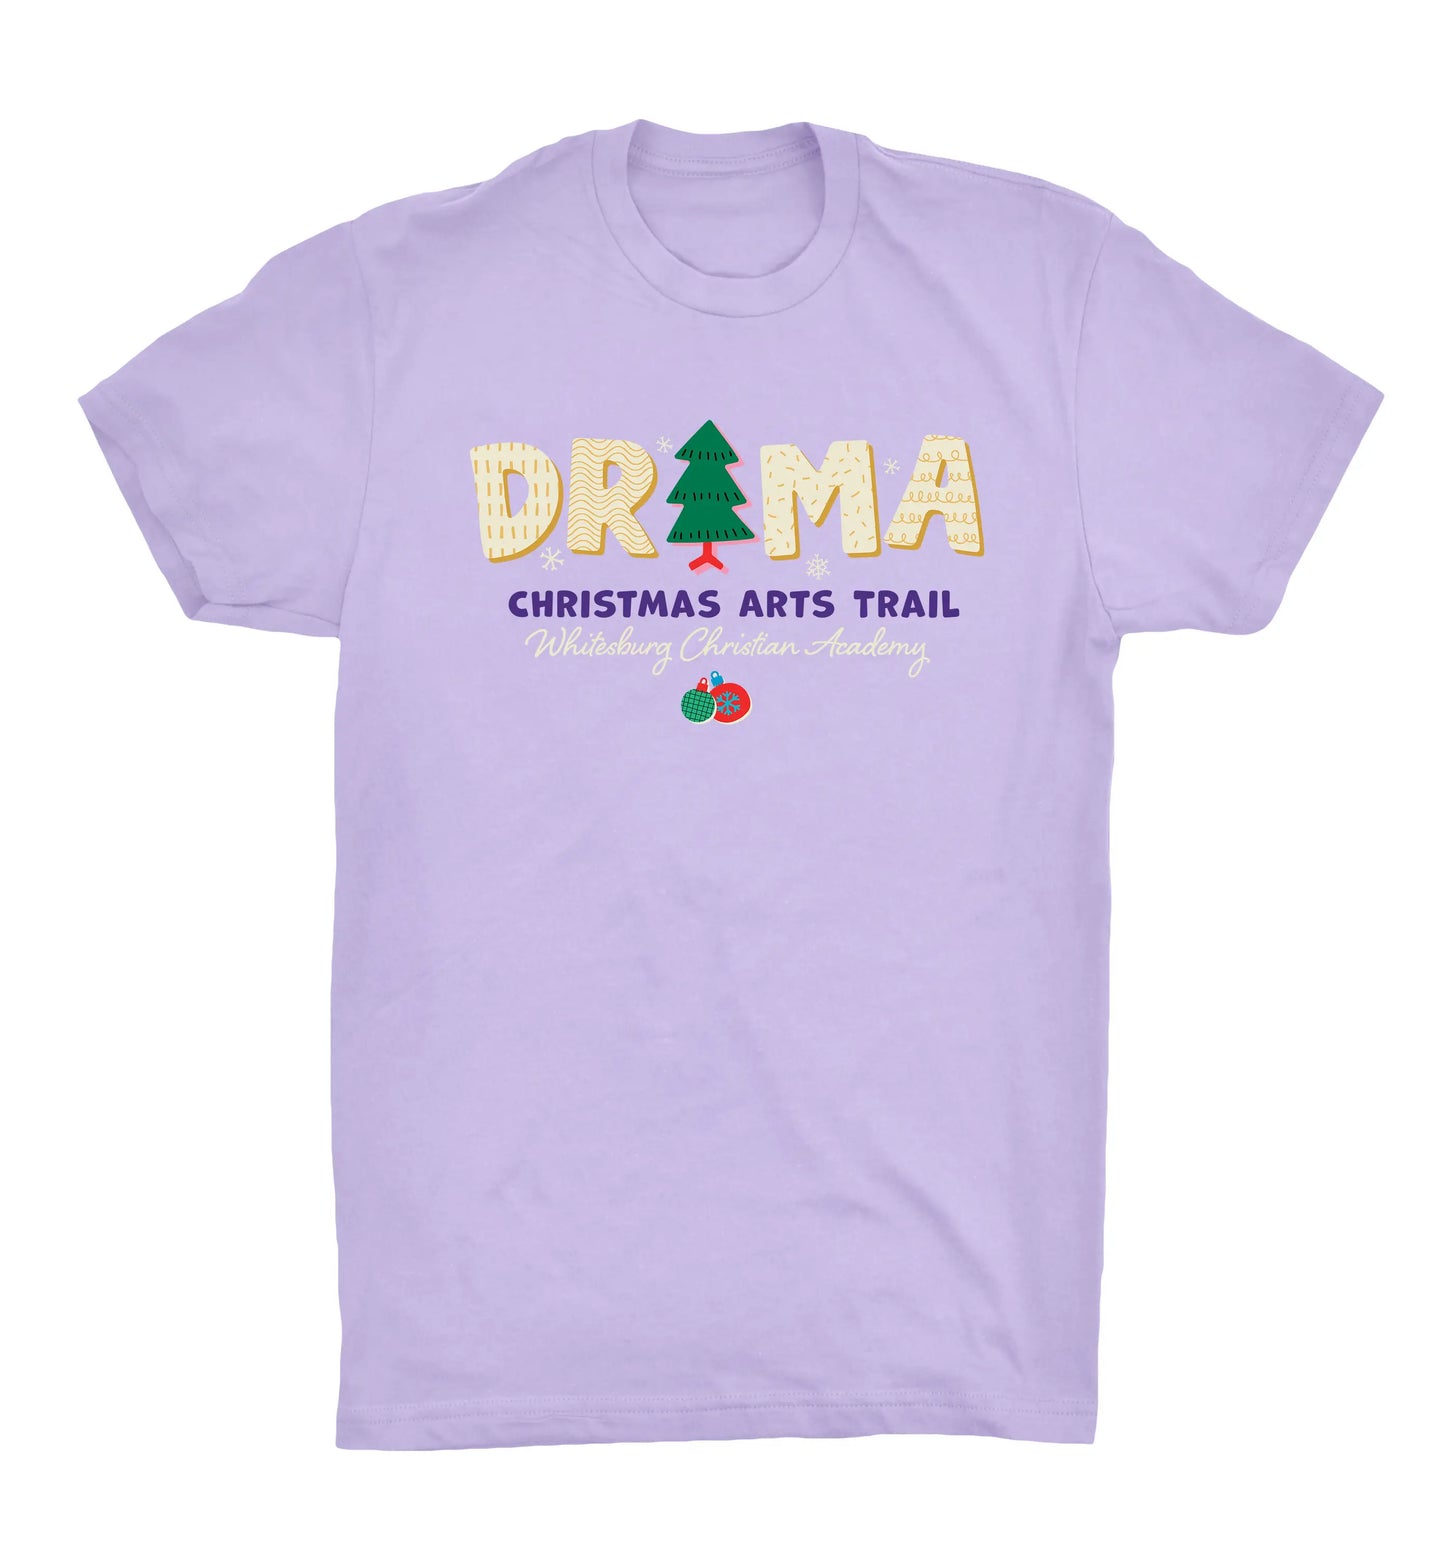 DRAMA Christmas Arts Trail Tshirt